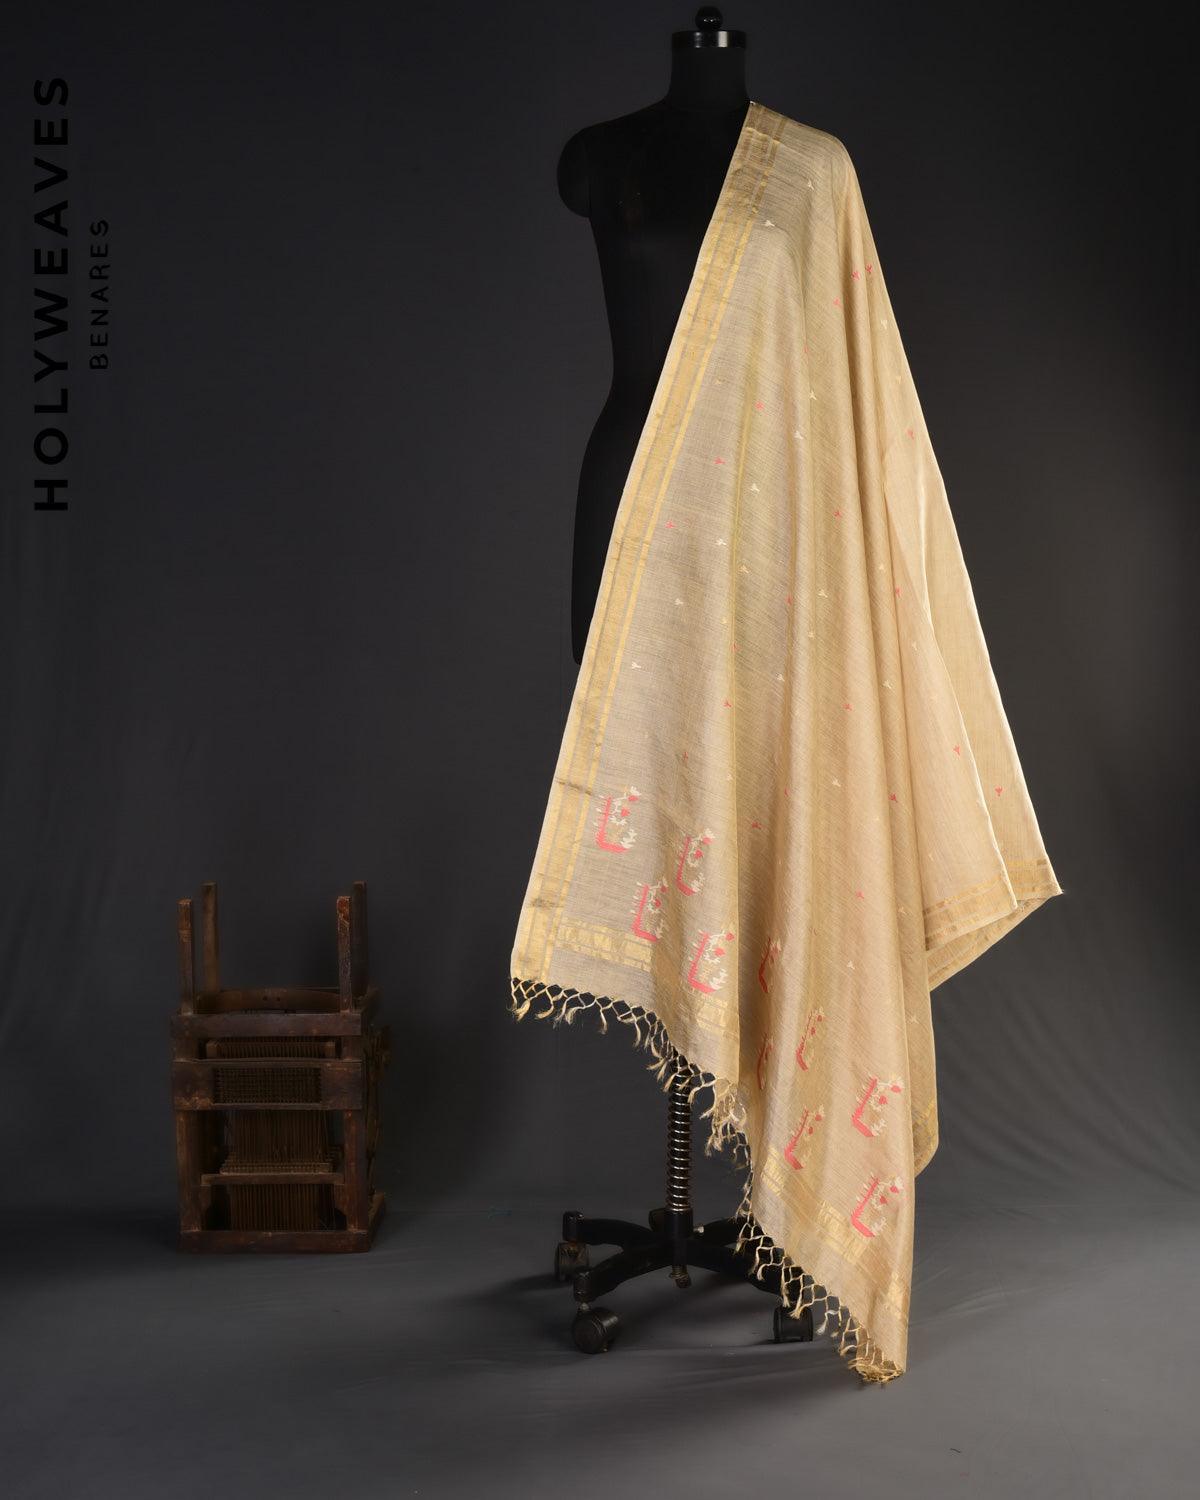 Beige Trident Buti Kadhuan Brocade Handwoven Tasar Muga Tissue Dupatta - By HolyWeaves, Benares